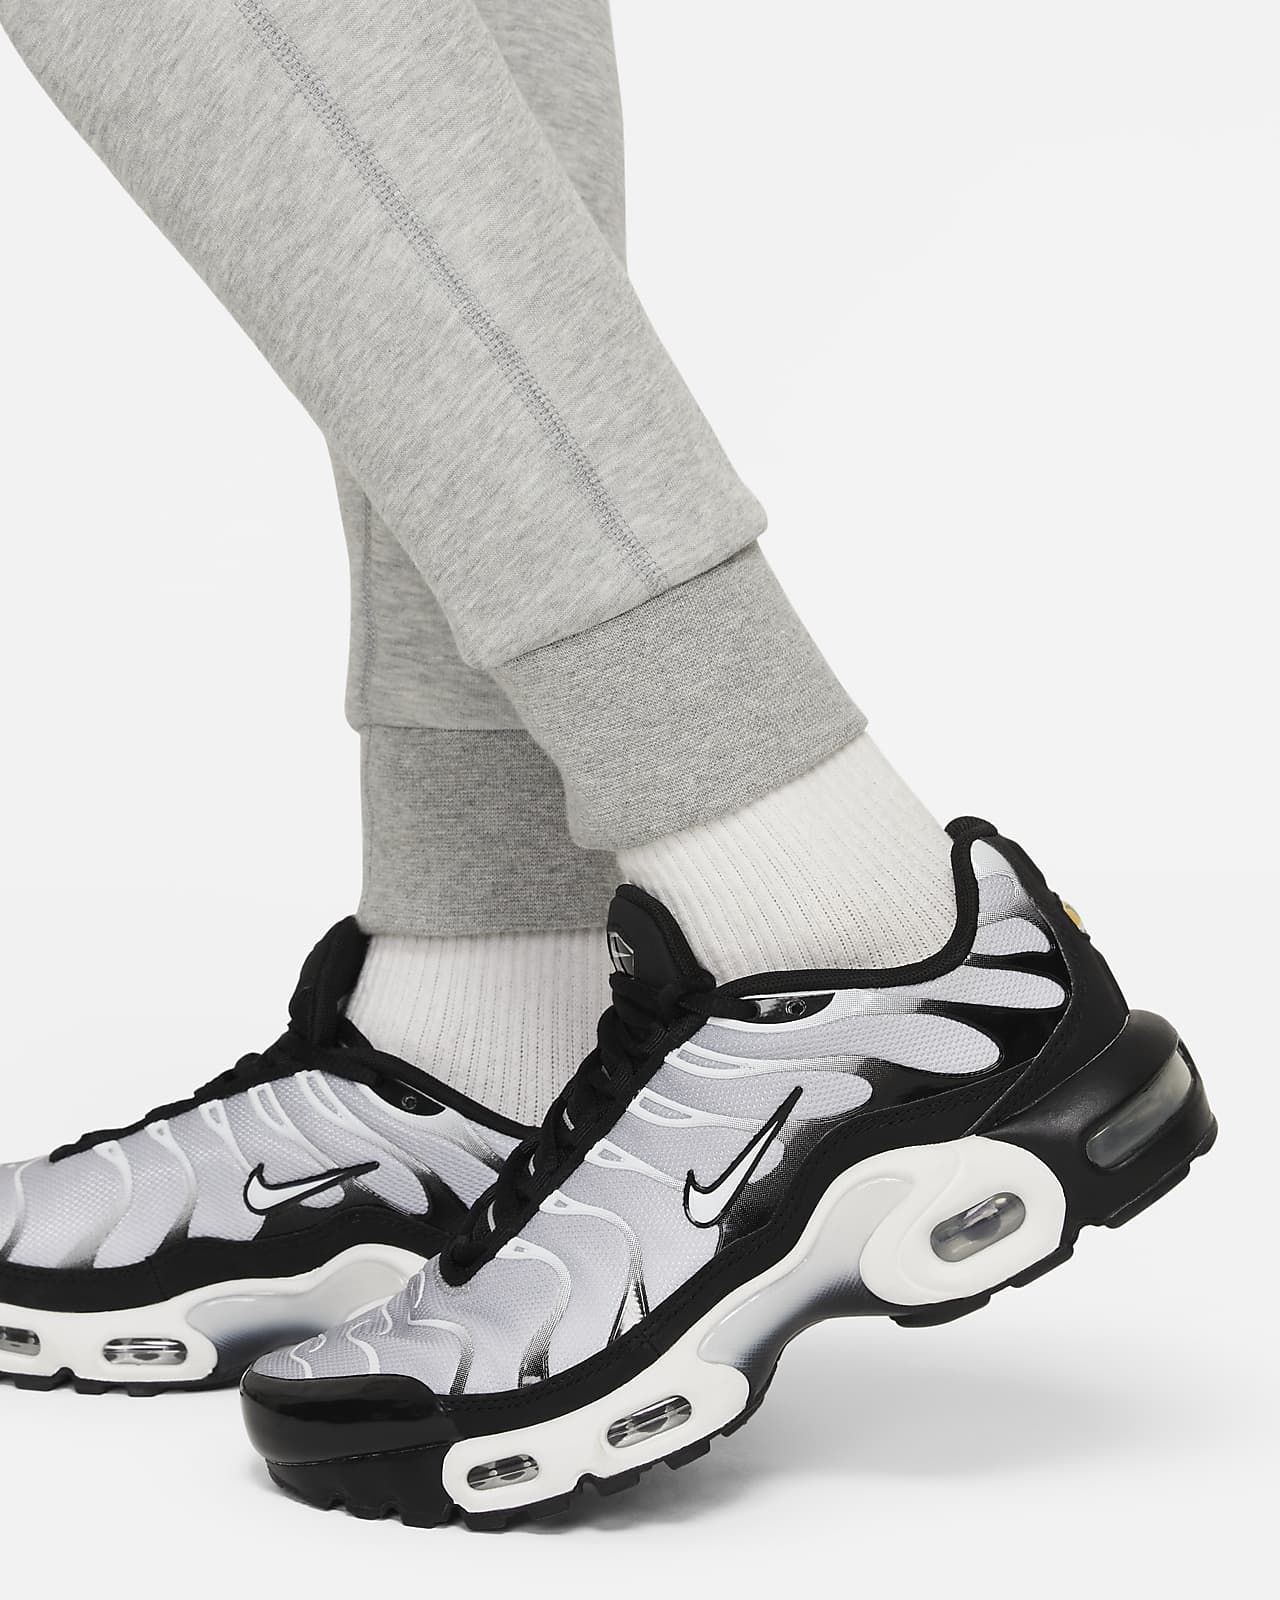 Nike Sportswear Tech Fleece Older Boys' Pants - FD3287-063